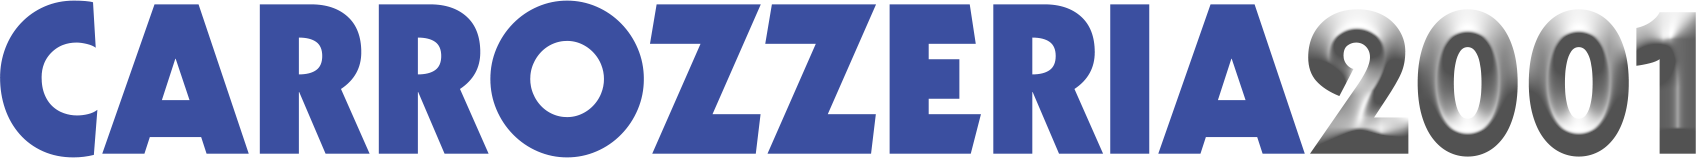 carrozzeria2001-logo-header.png